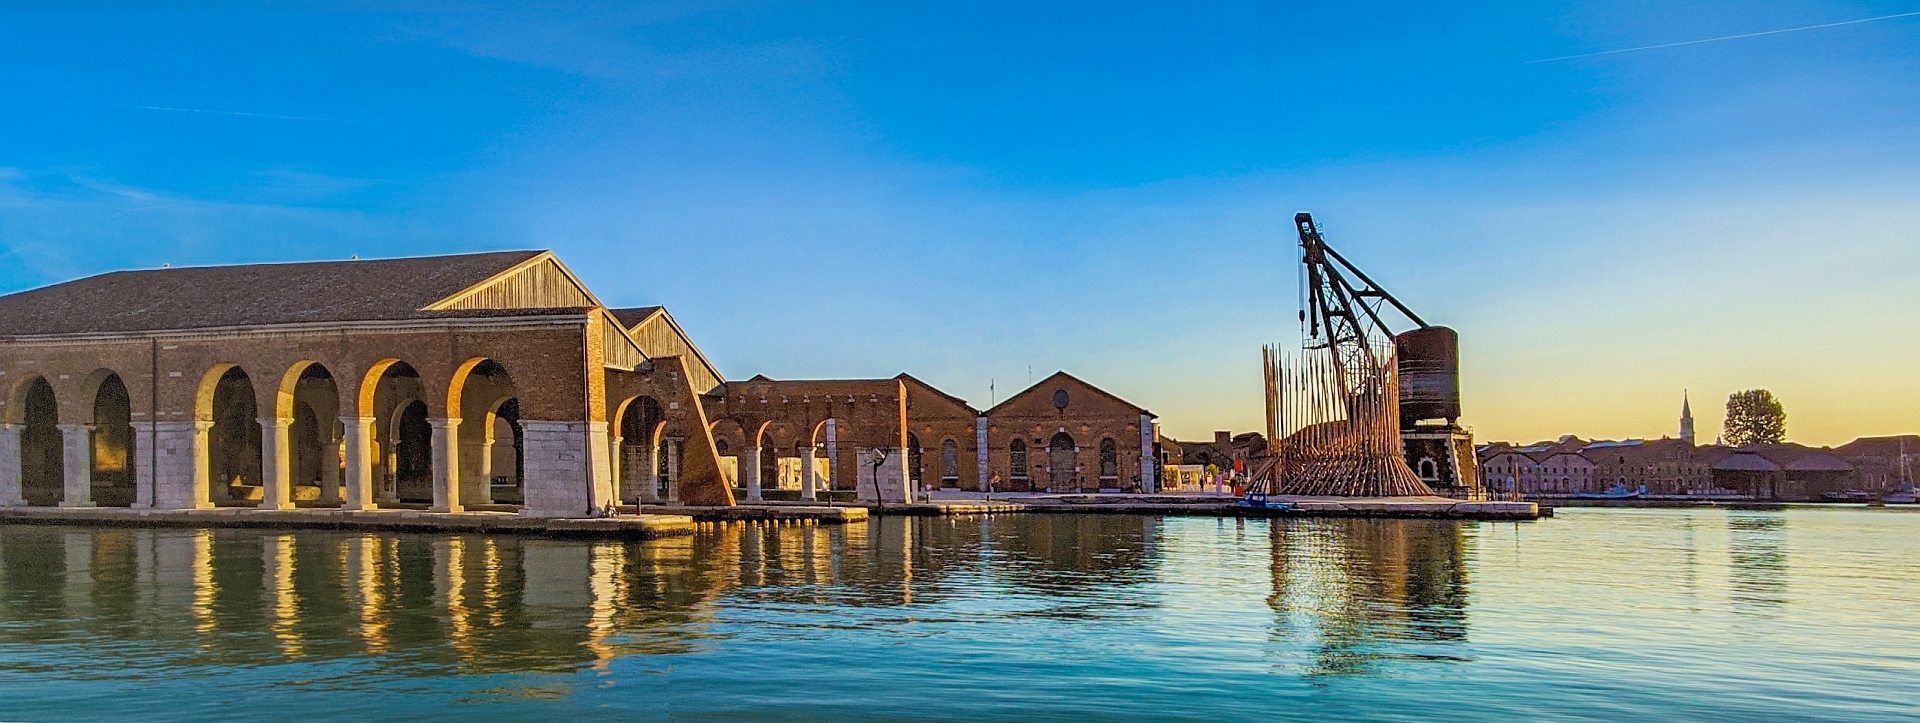 Das Hafenbecken des Arsenale - hier in der Abendsonne - kann auch ohne Biennale-Eintrittskarte besucht werden.